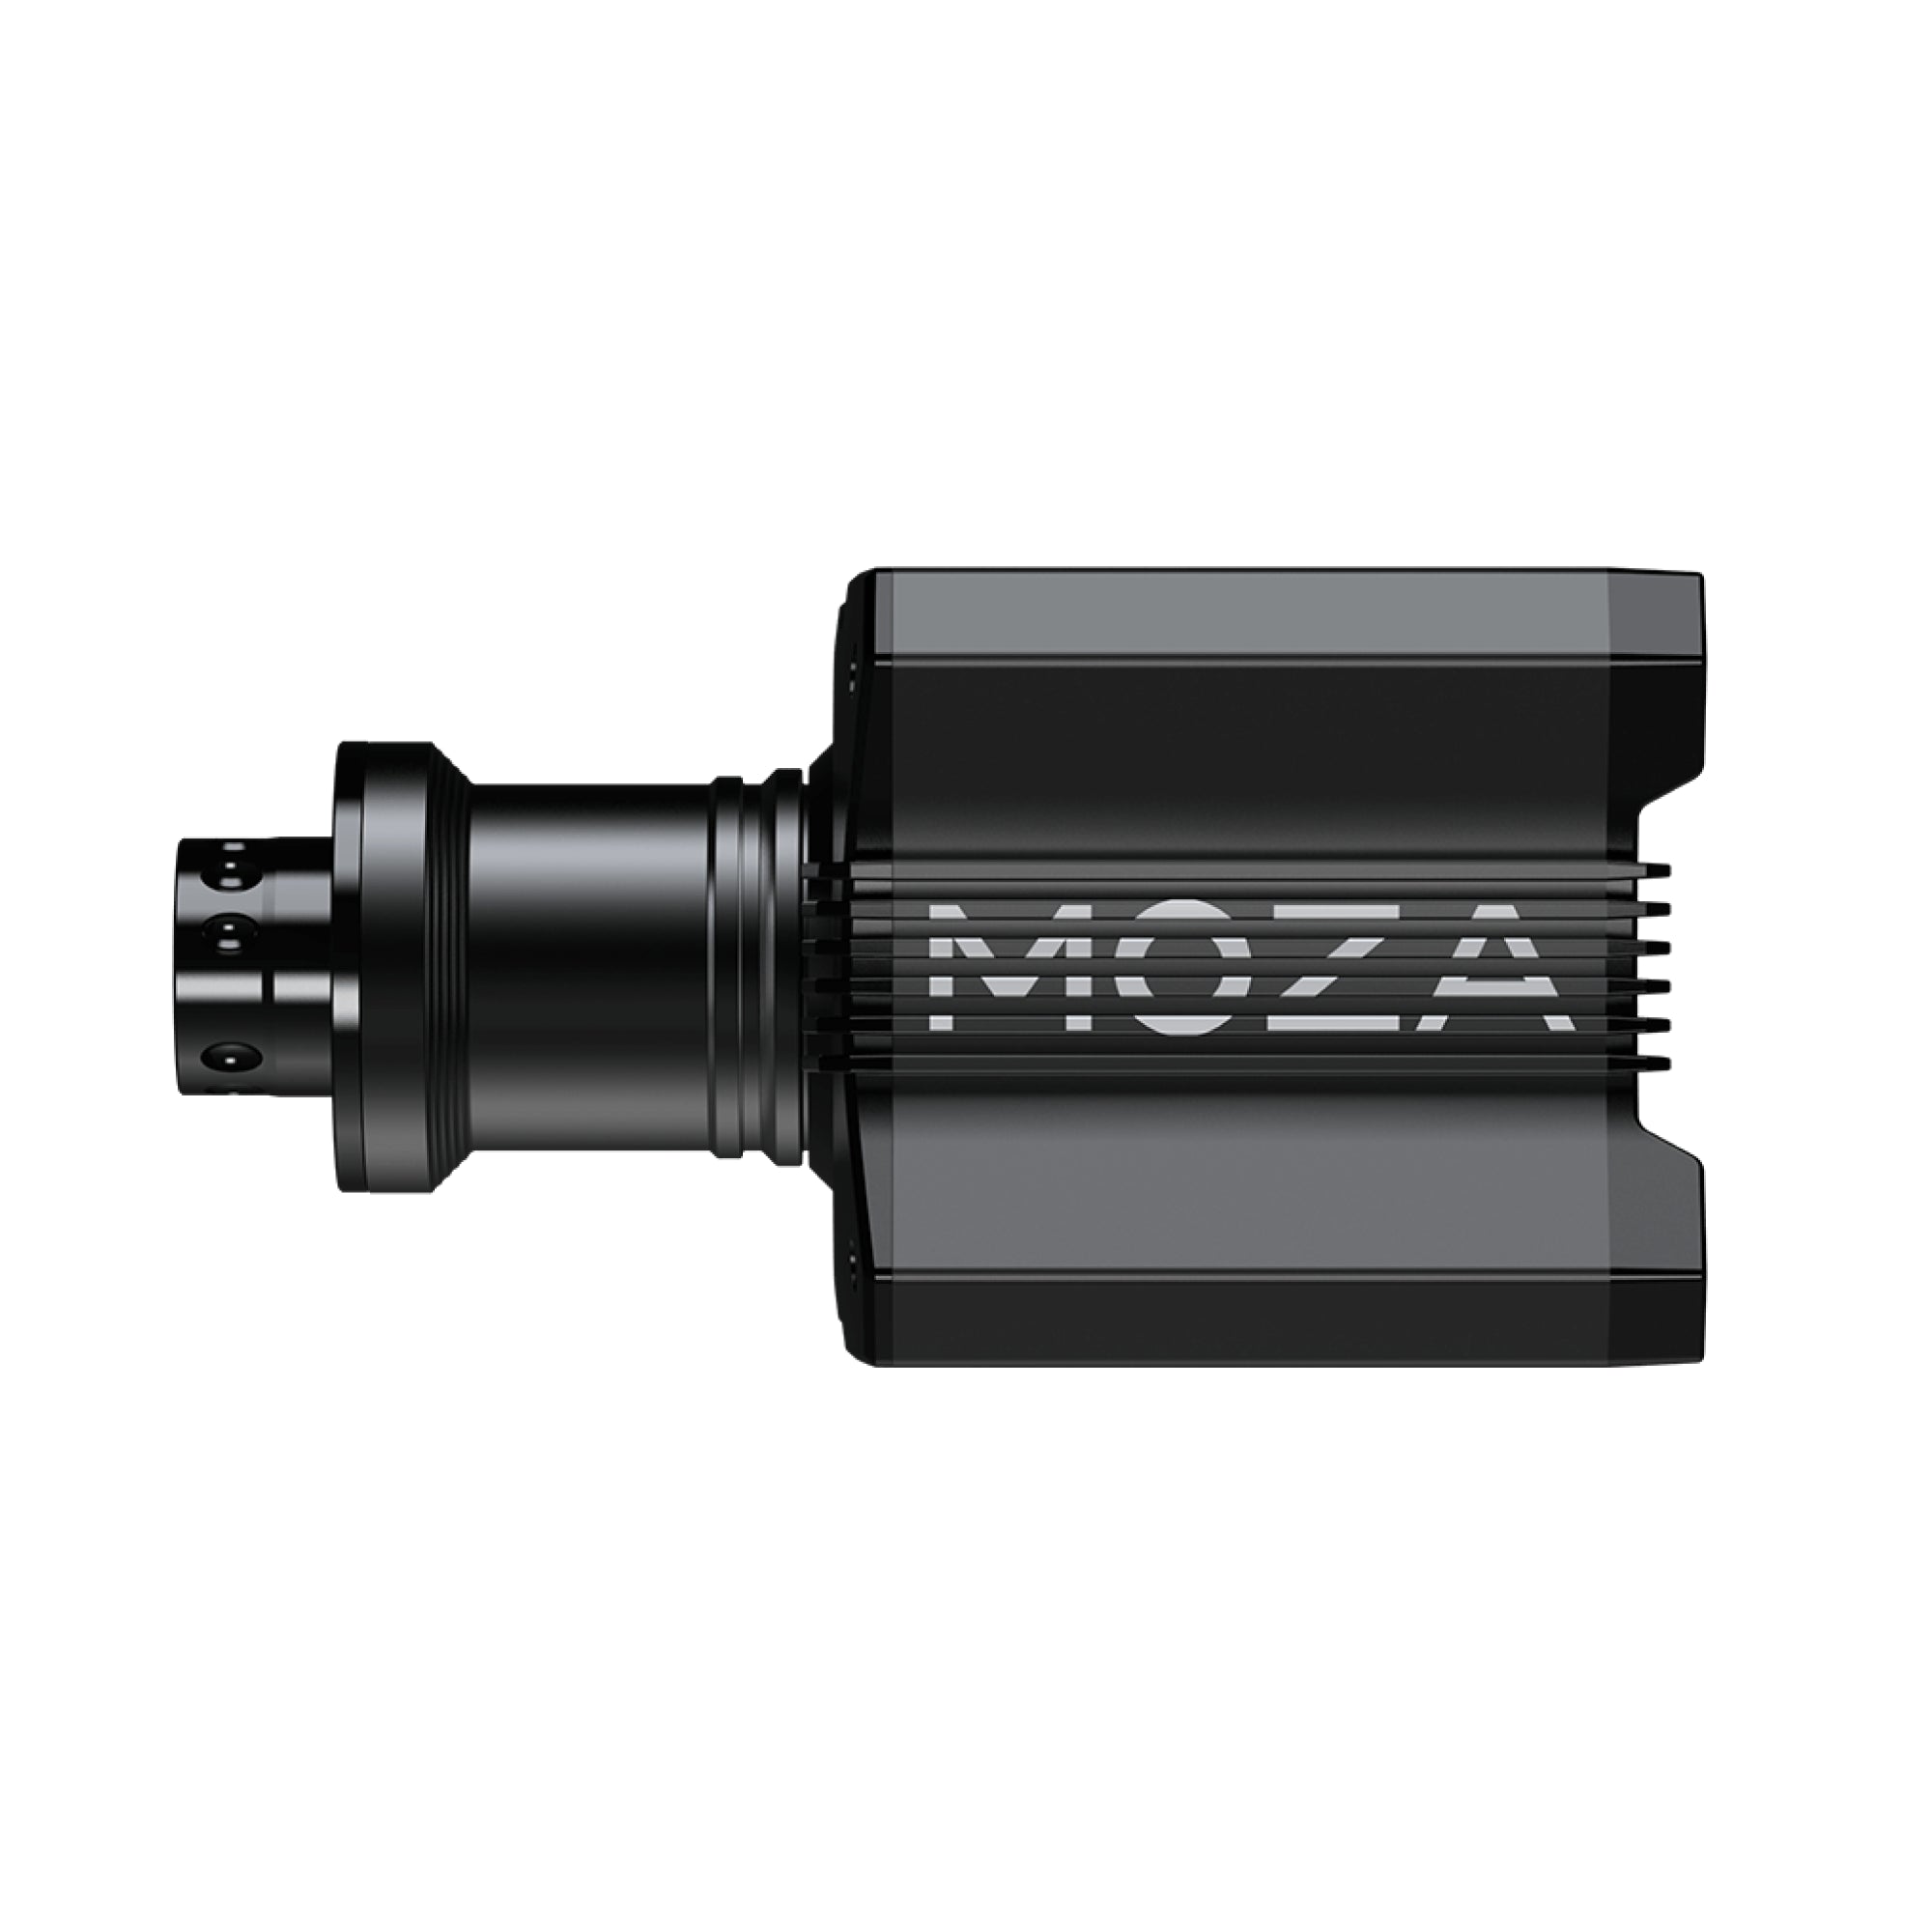 MOZA R9 Direct Drive Wheel Base